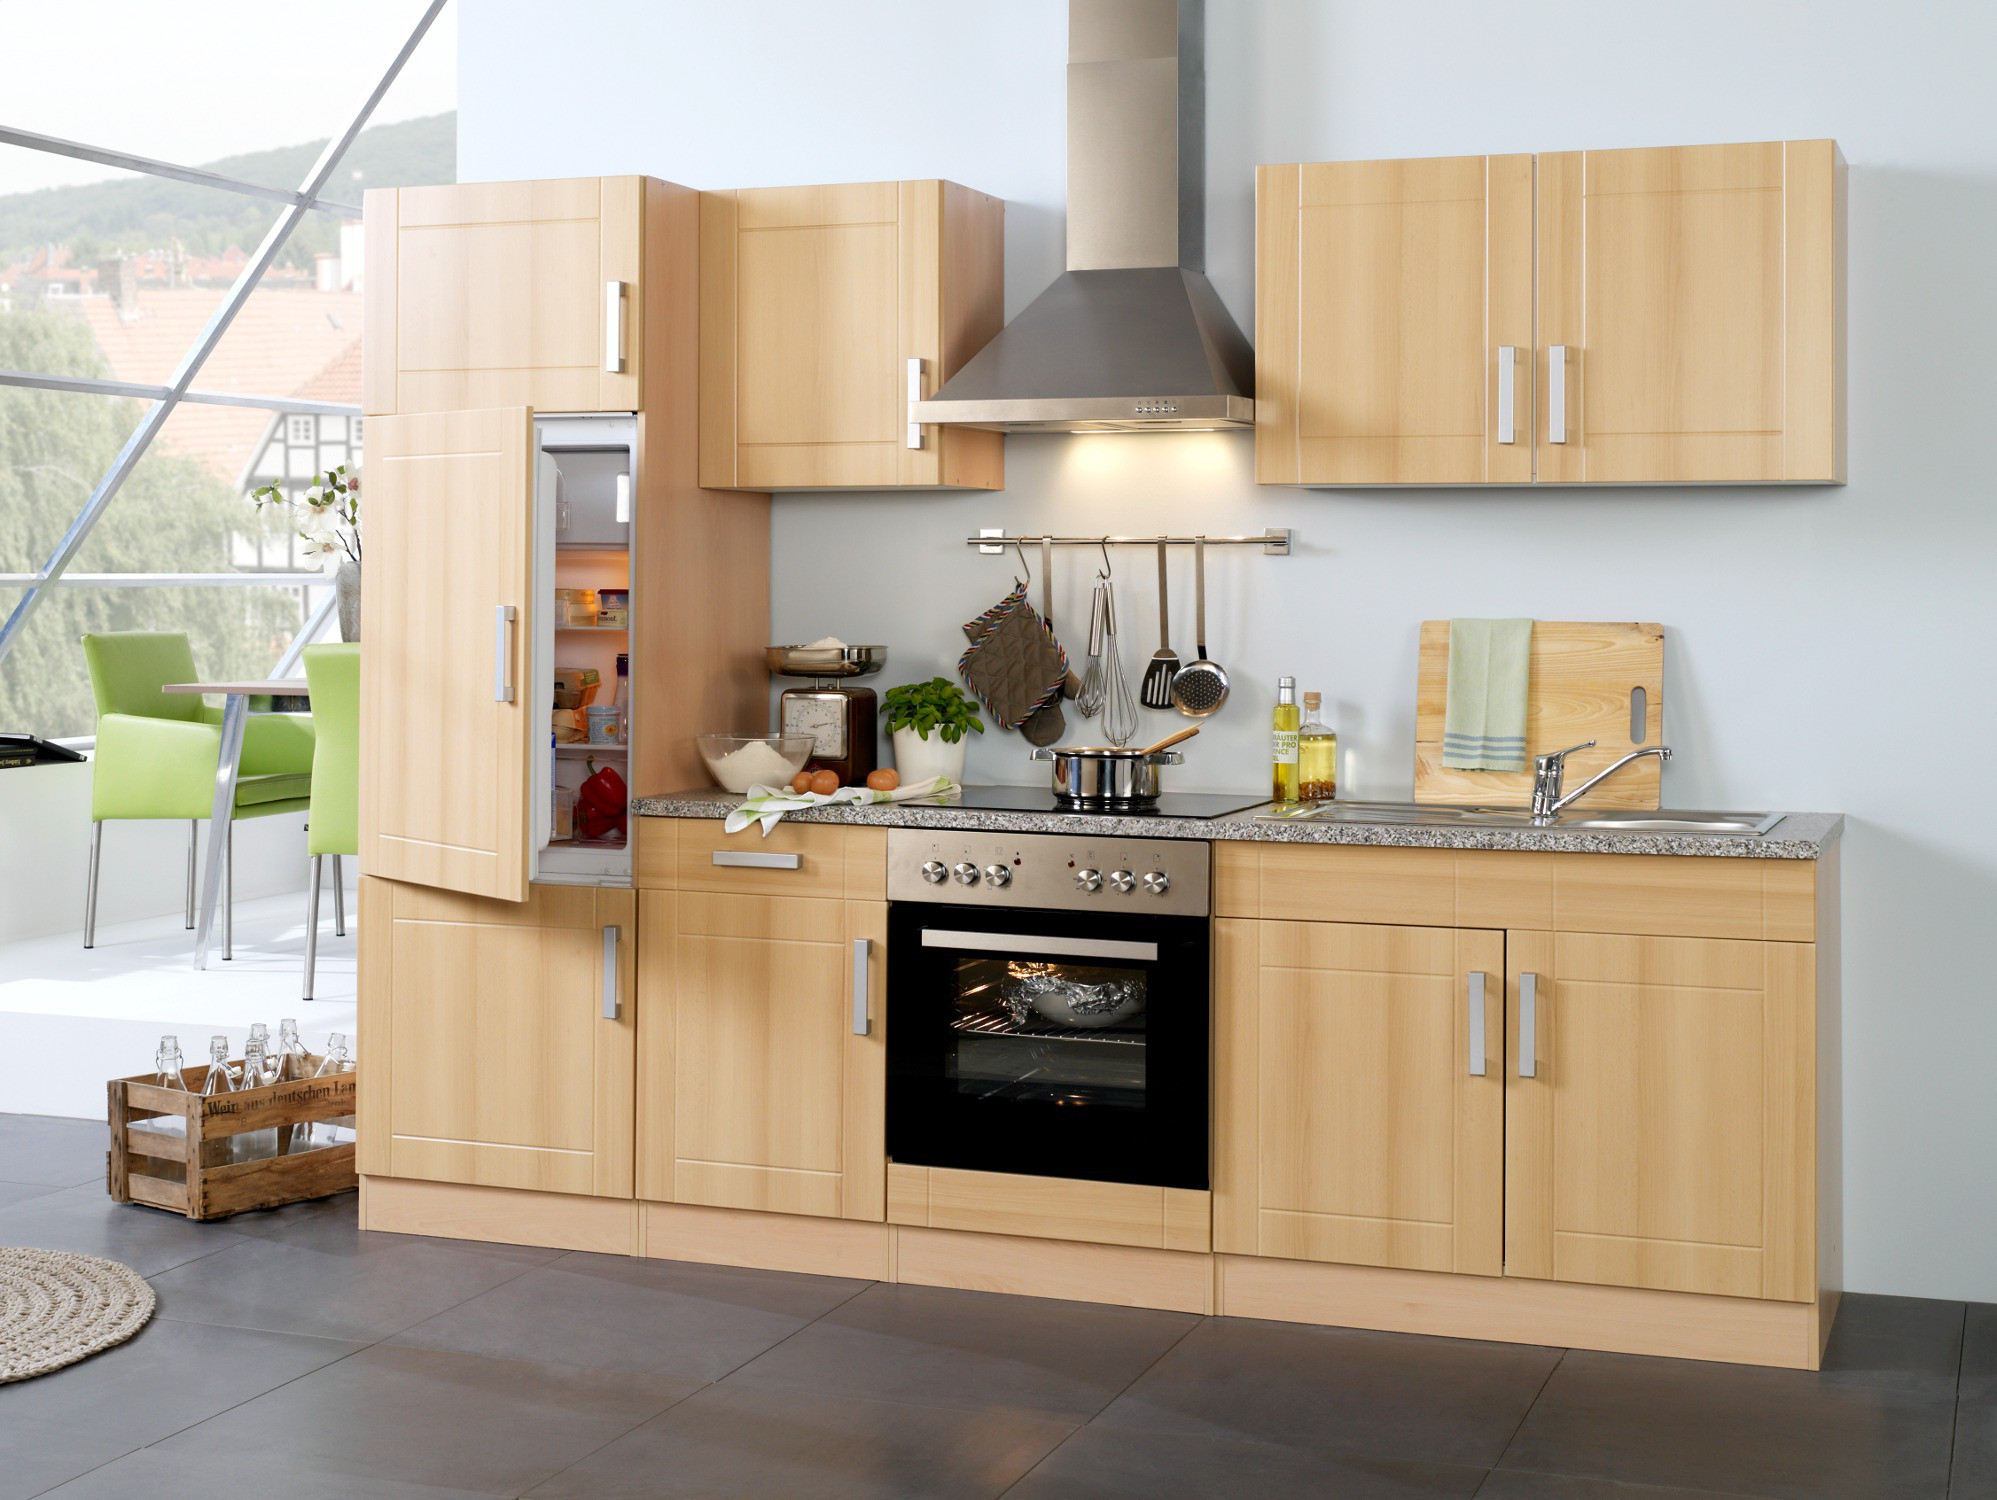 Küche Mit Geräten
 Küchenzeile VAREL Küche mit E Geräten Breite 270 cm